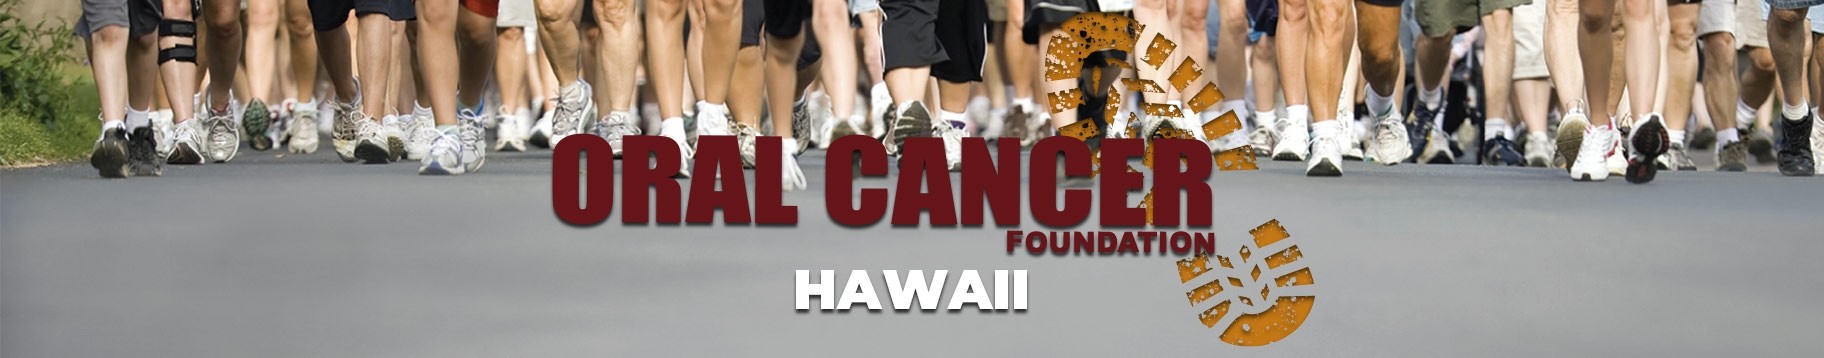 Hawaii Oral Cancer Walk